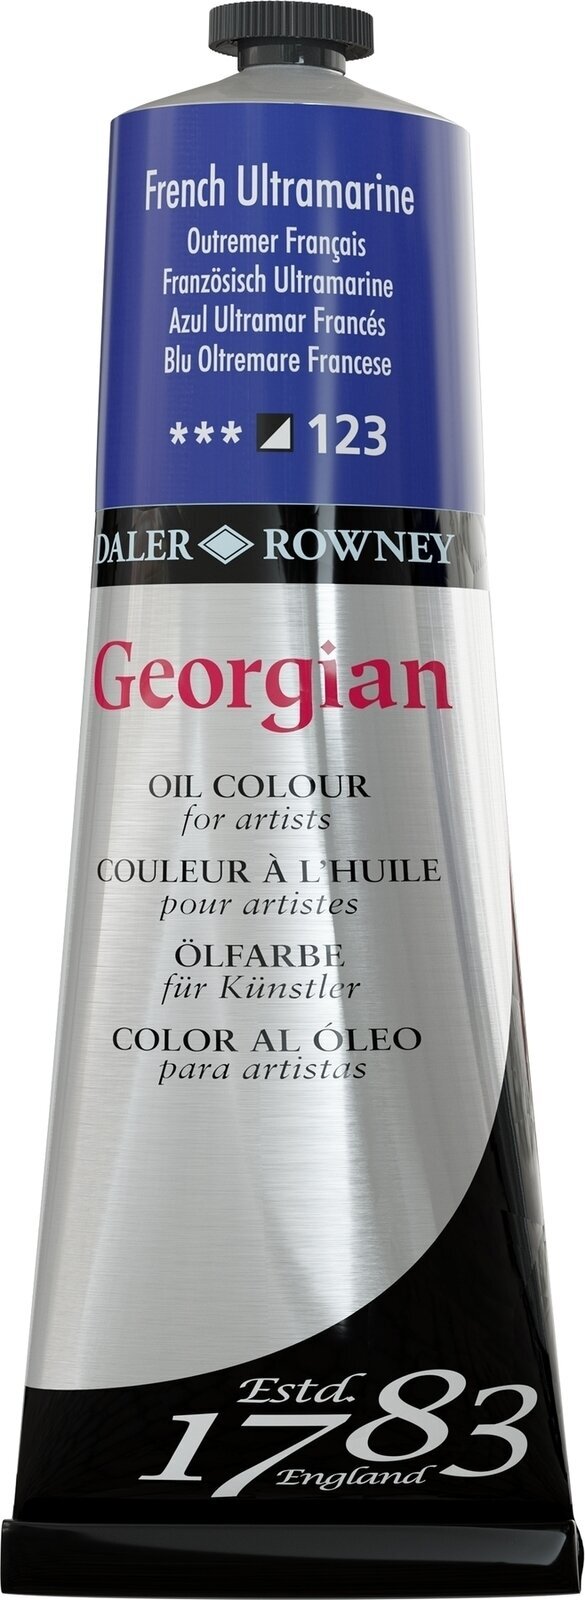 Χρώμα λαδιού Daler Rowney Georgian Λαδομπογιά French Ultramarine 225 ml 1 τεμ.